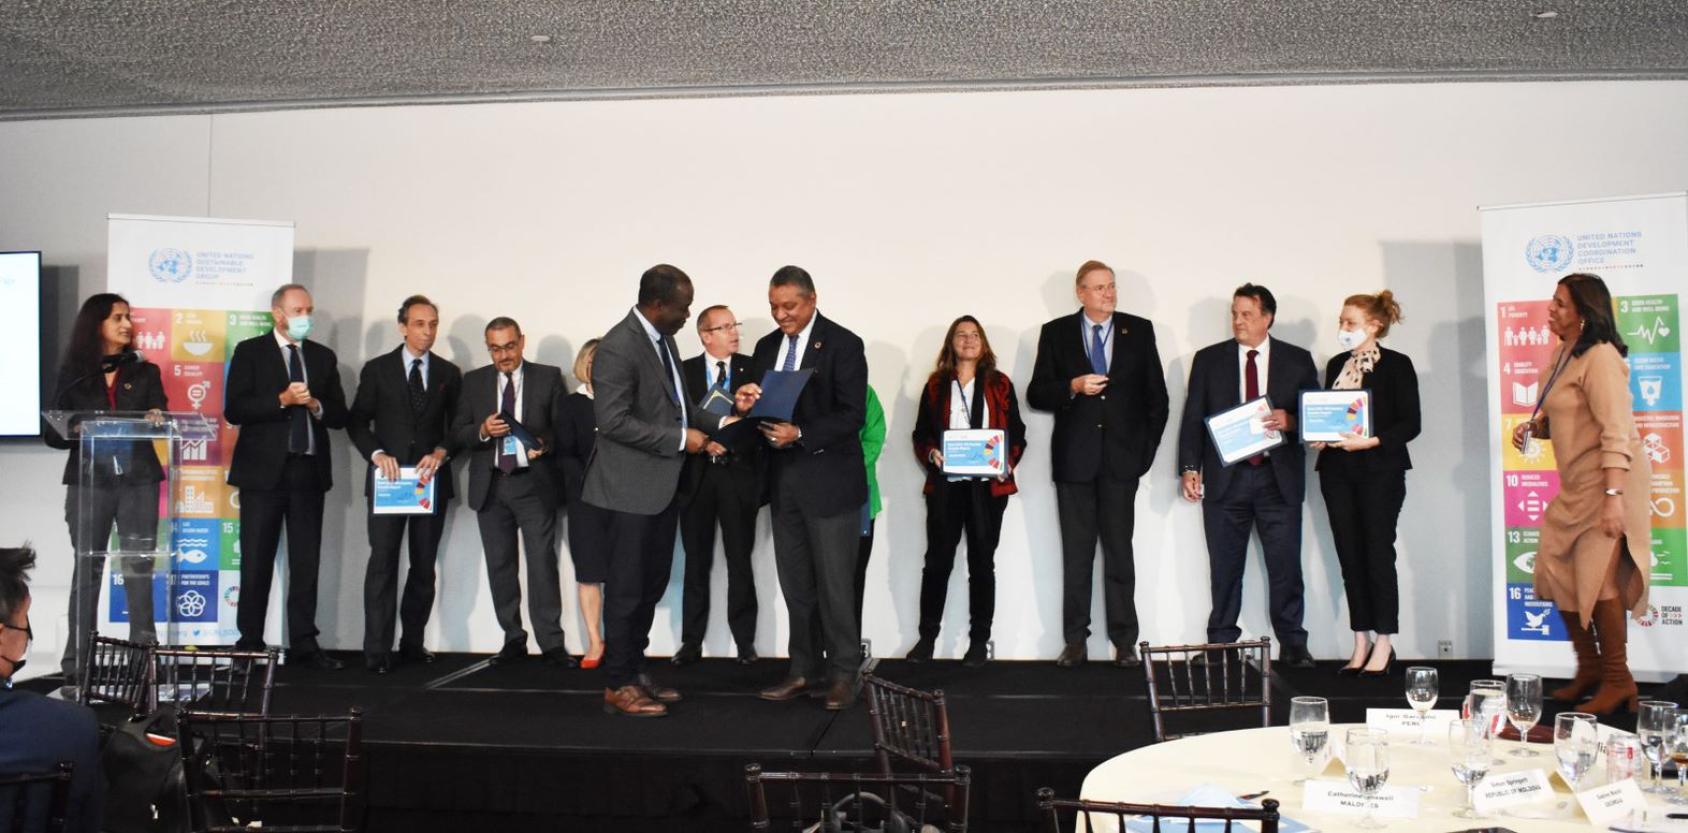 Un grupo de personas con vestimenta formal en un escenario durante la ceremonia de entrega de los informes anuales de resultados del equipo de las Naciones Unidas.